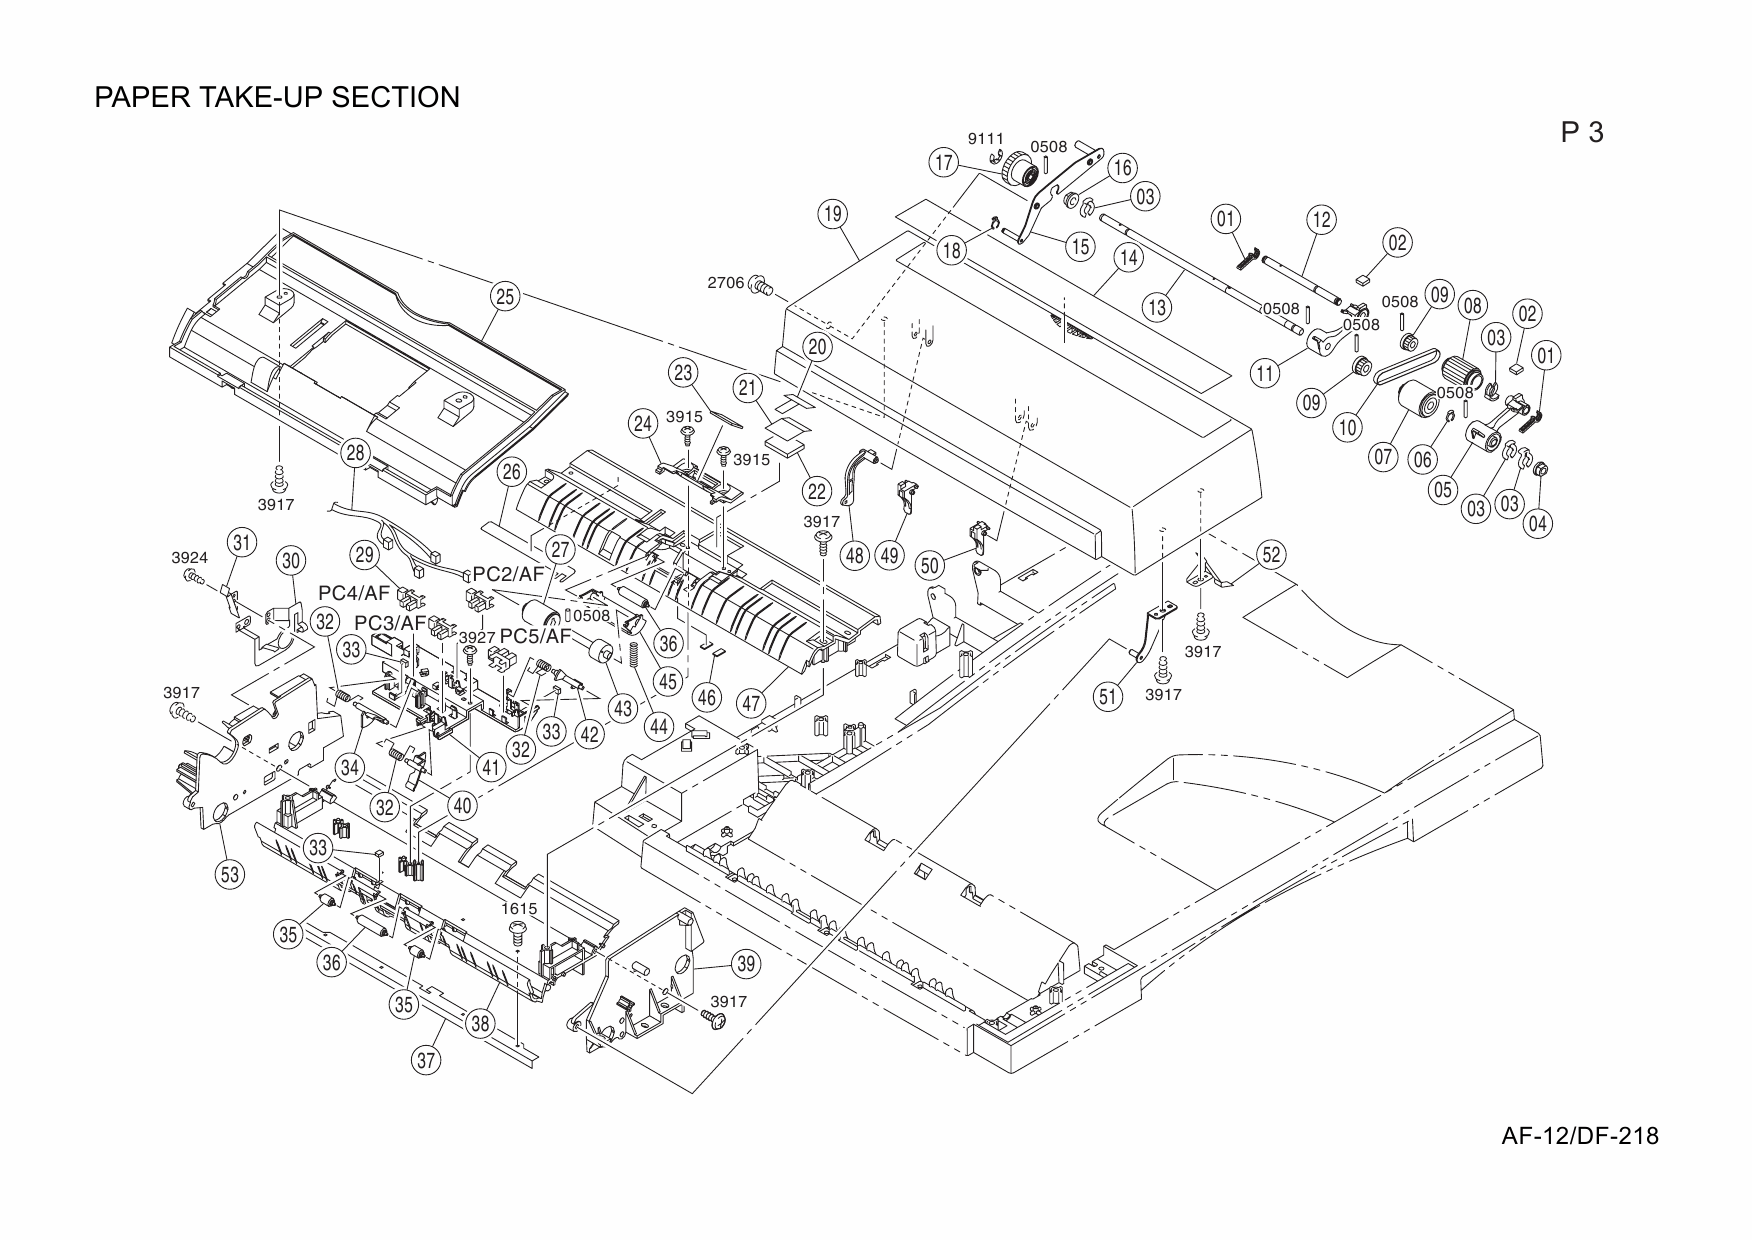 Konica-Minolta Options AF-12 DF-218 Parts Manual-6